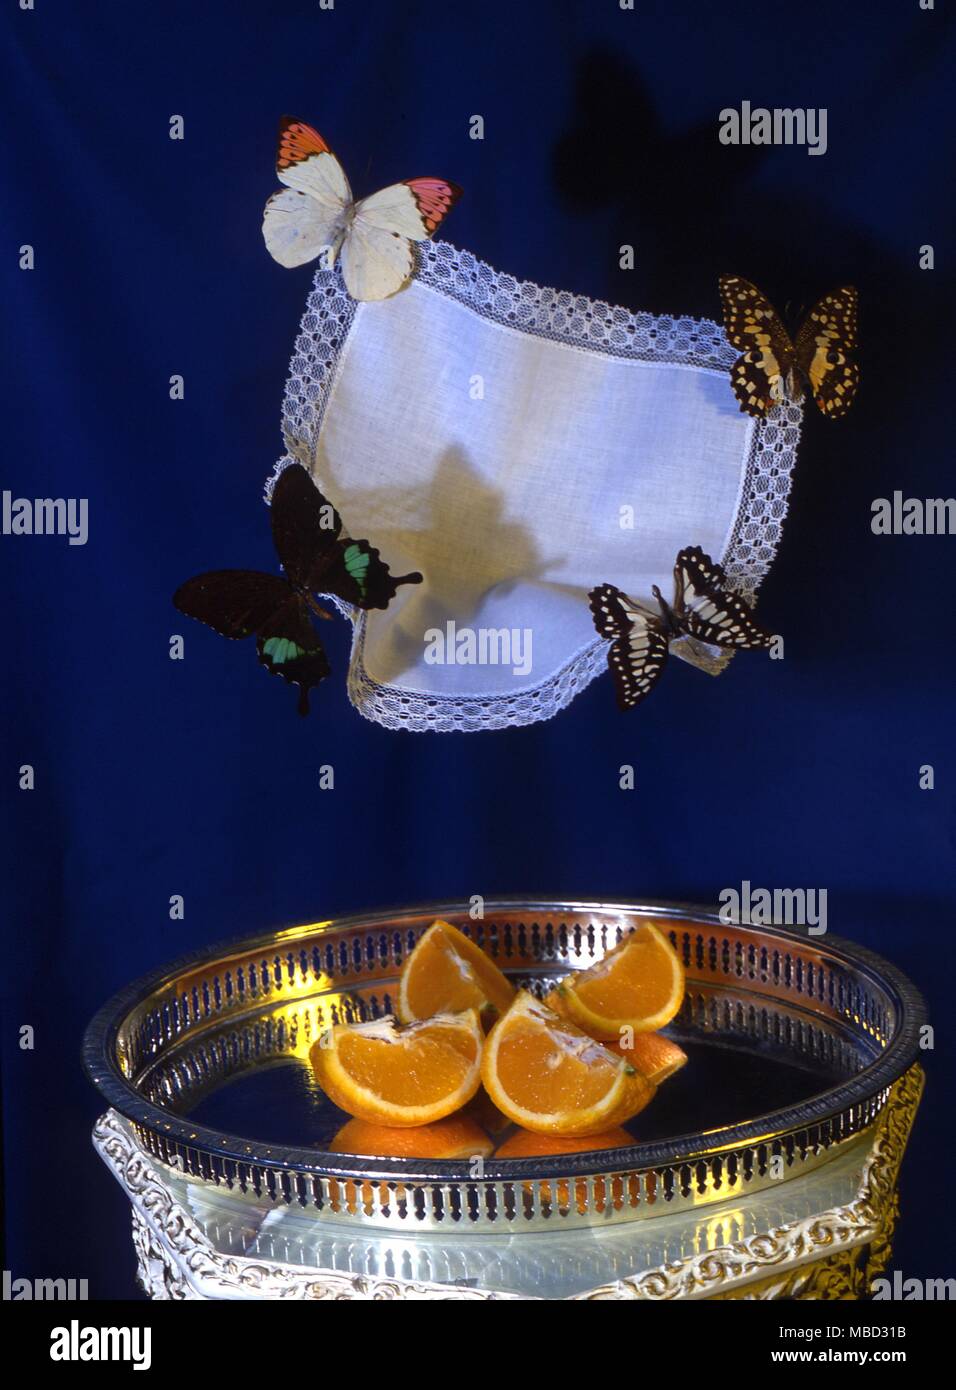 Magia en el escenario - la ilusión. El mago corta una naranja y de volar cuatro mariposas llevar un pañuelo. Ellos vuelan en la oscuridad encima del escenario y desaparecer. Foto de stock